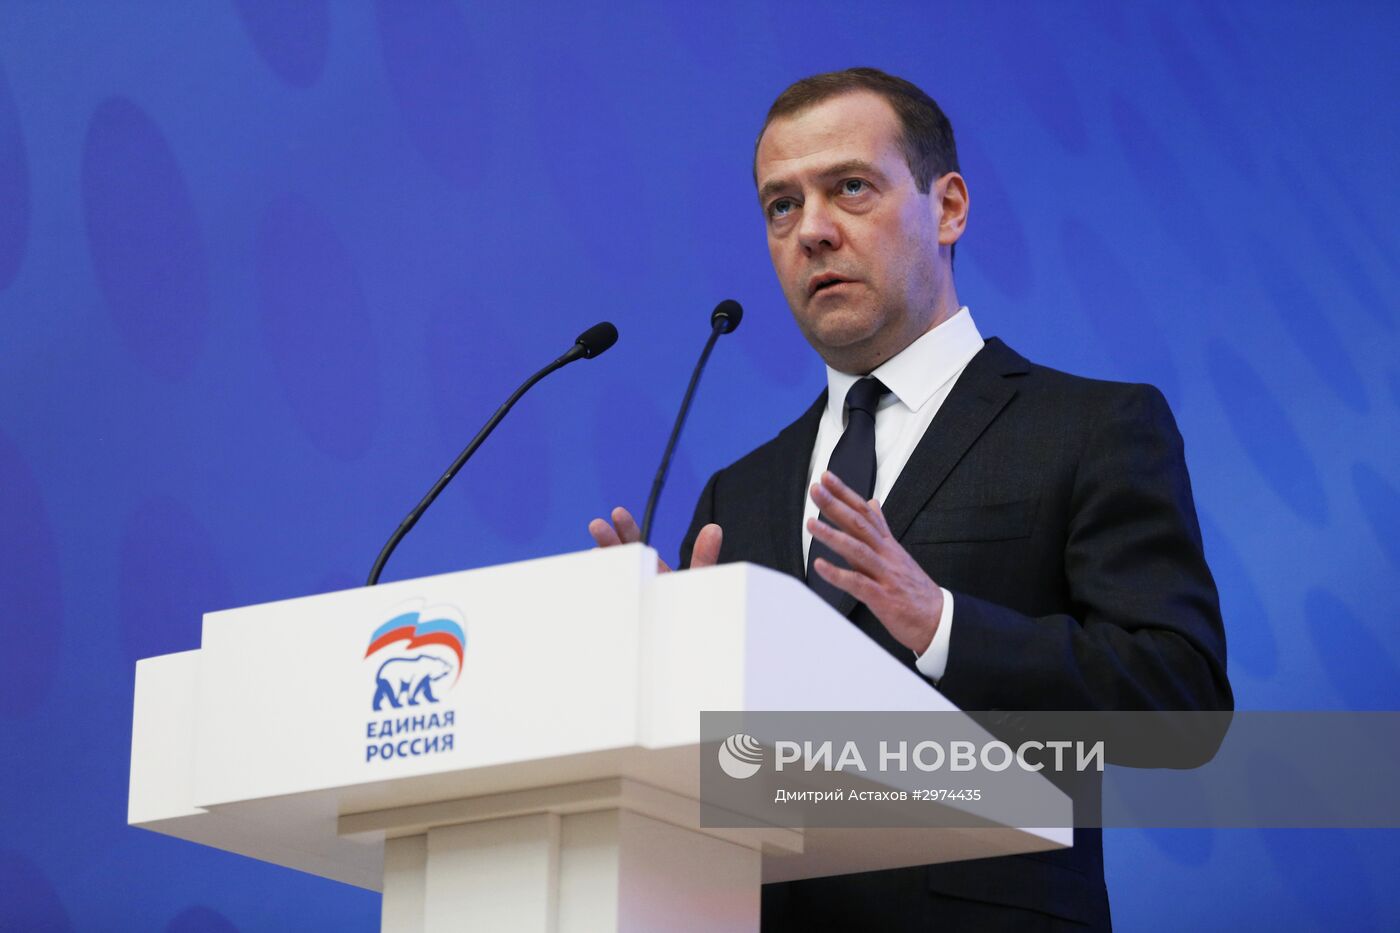 Премьер-министр РФ Д. Медведев принял участие в заседании фракции партии "Единая Россия"